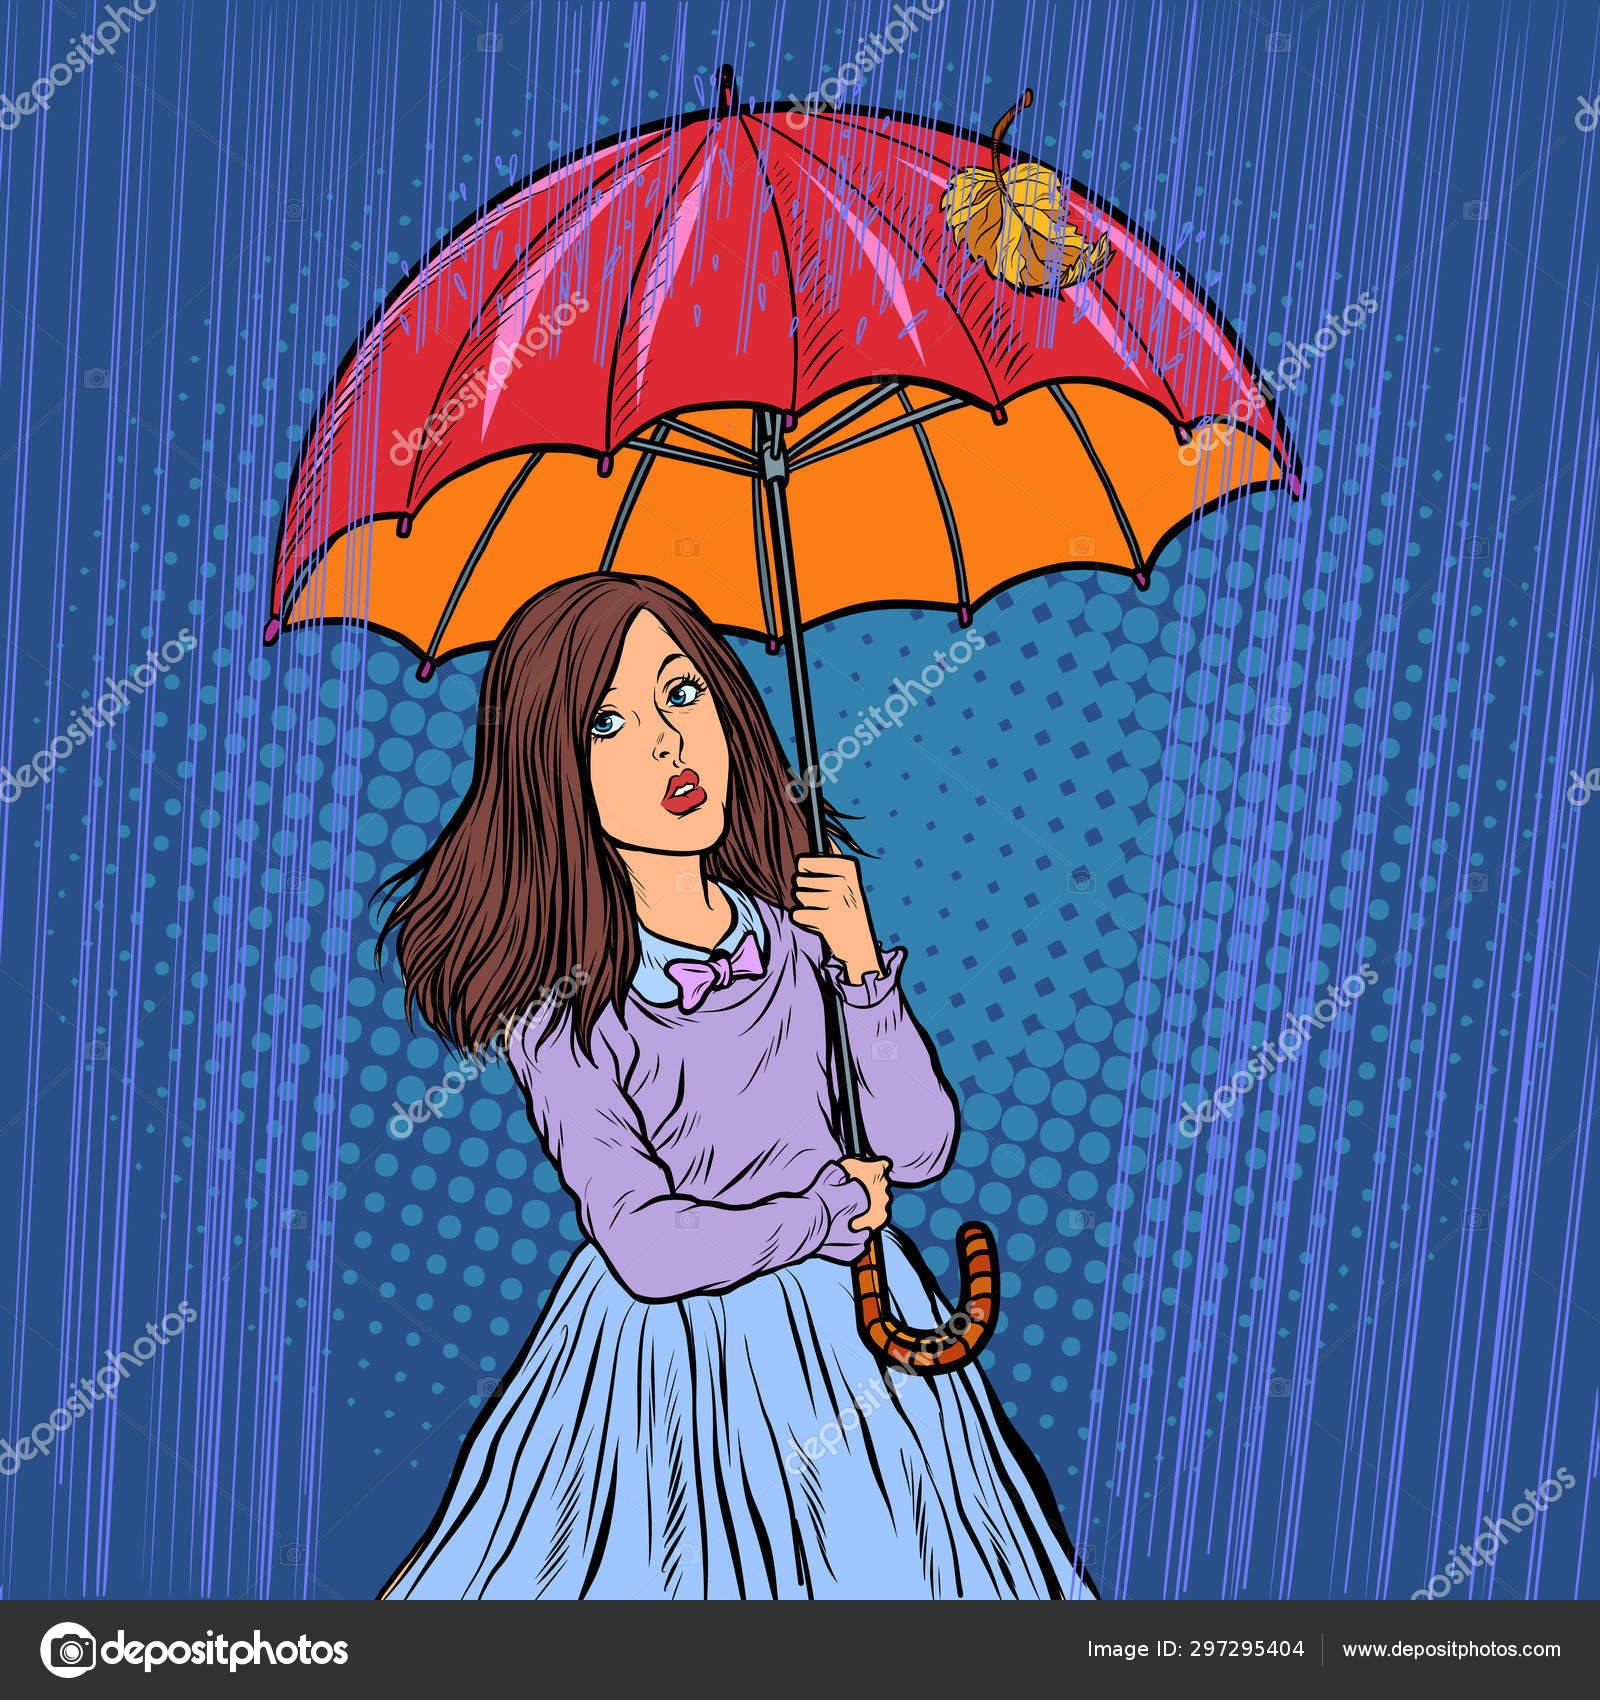 Umbrella girl by Maieth on DeviantArt